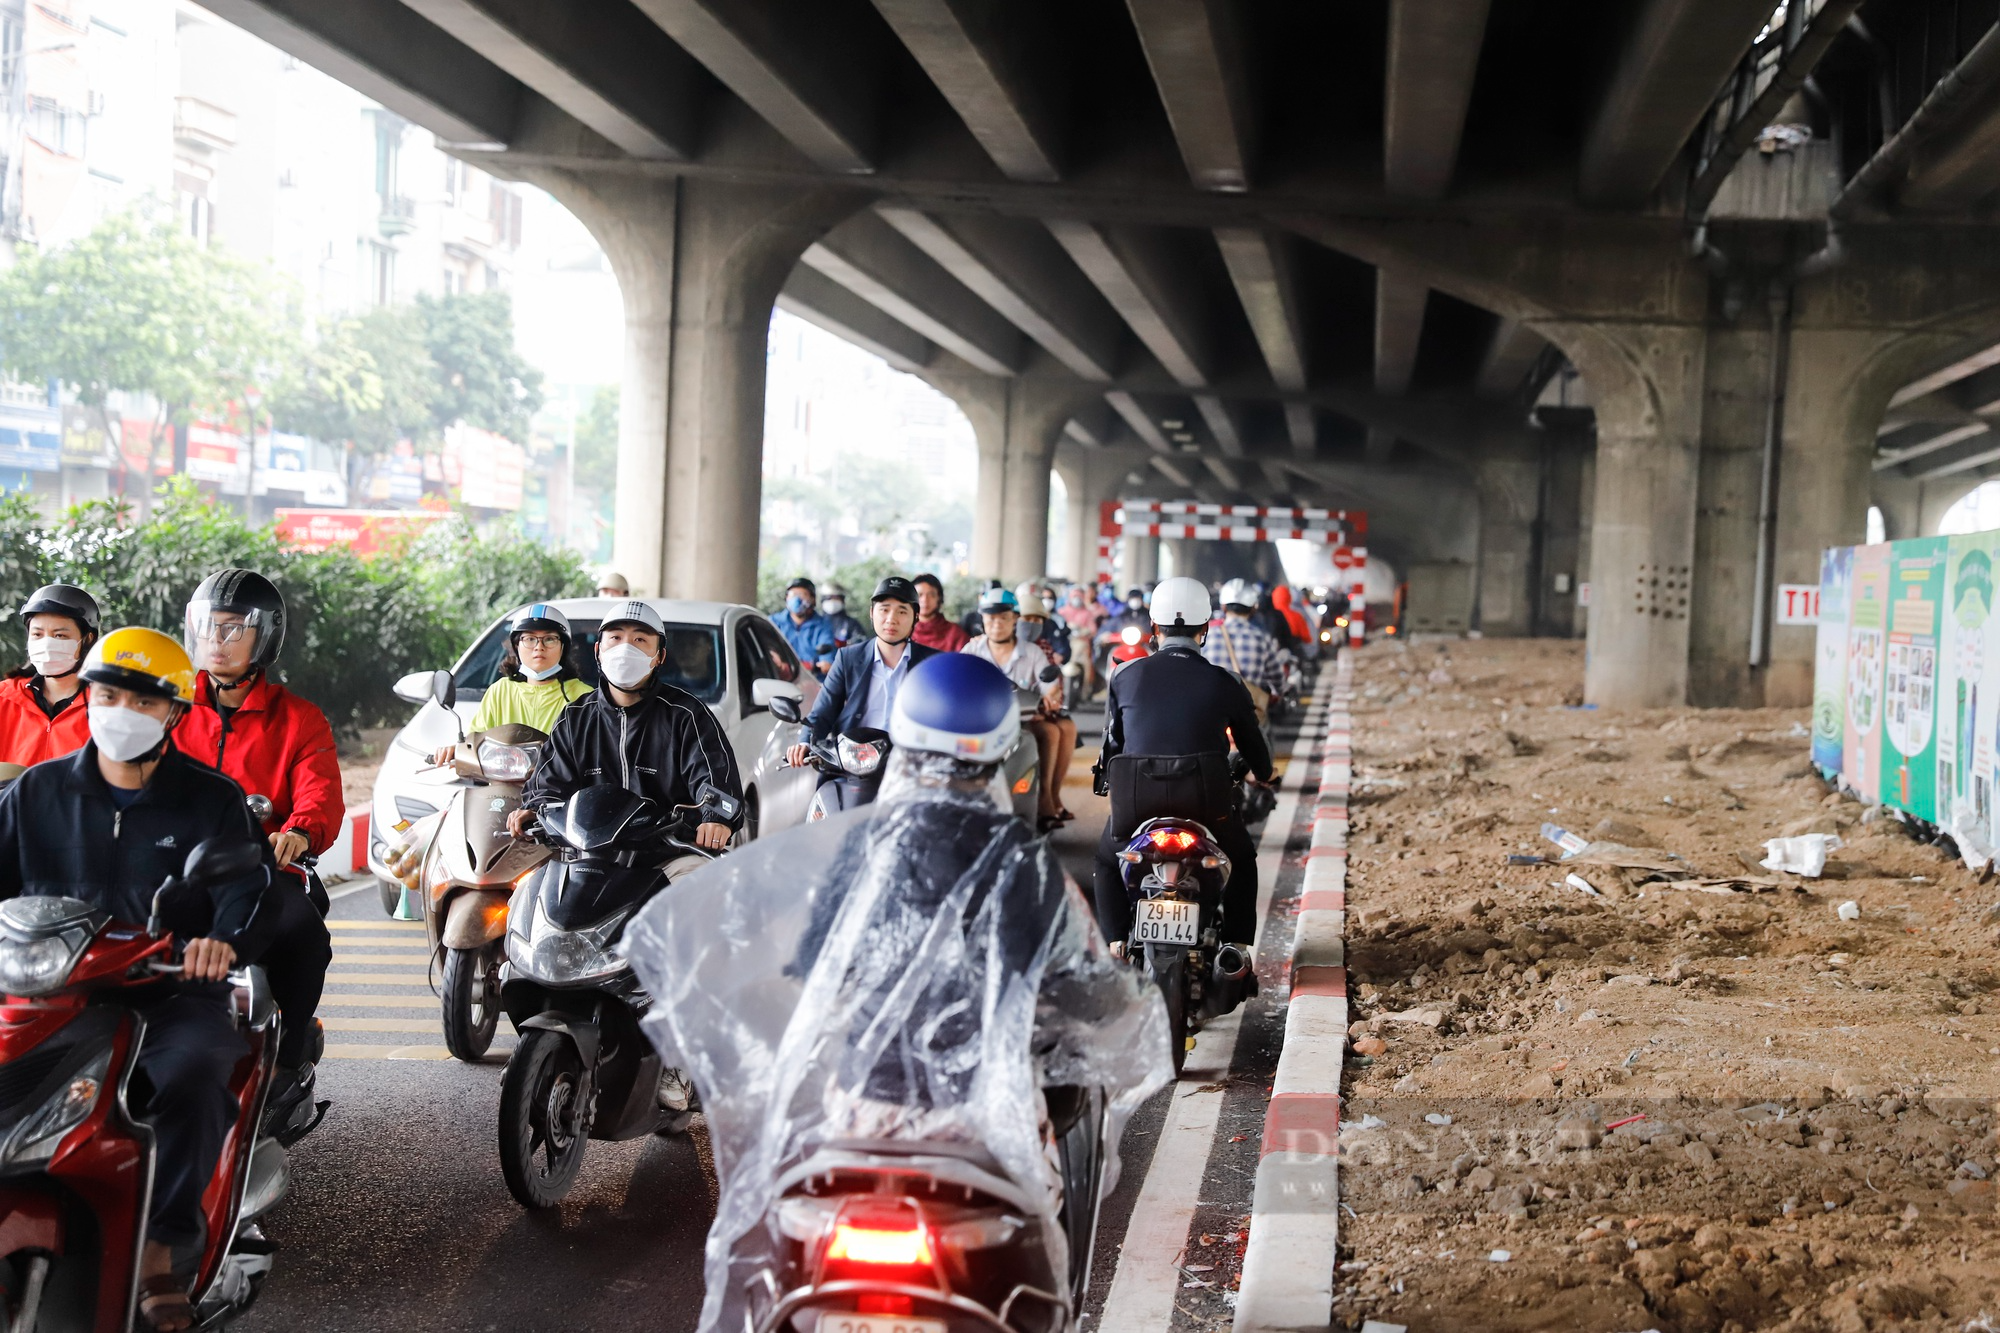 Hàng đoàn xe máy ùn ùn đi ngược chiều tại đoạn đường mới mở tại Hà Nội - Ảnh 4.